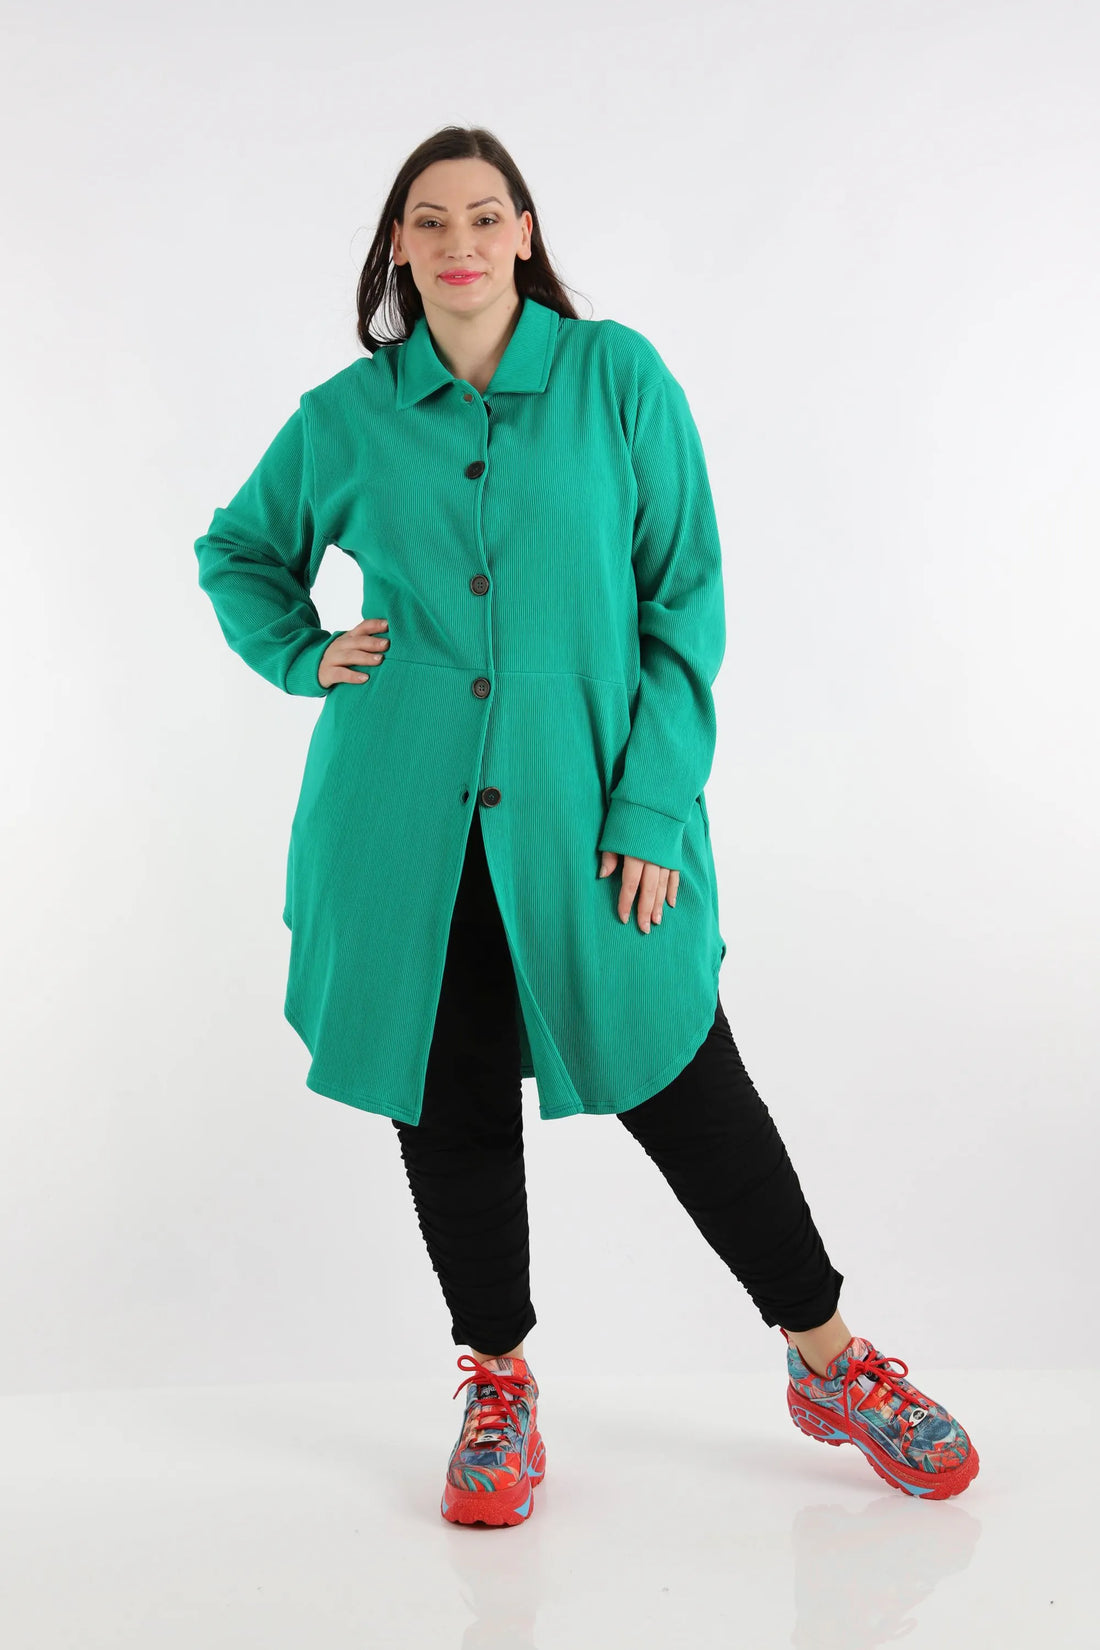 Bluse von AKH Fashion aus Baumwolle in gerundeter Form, 1252.06881, Grün, Schick, Modern